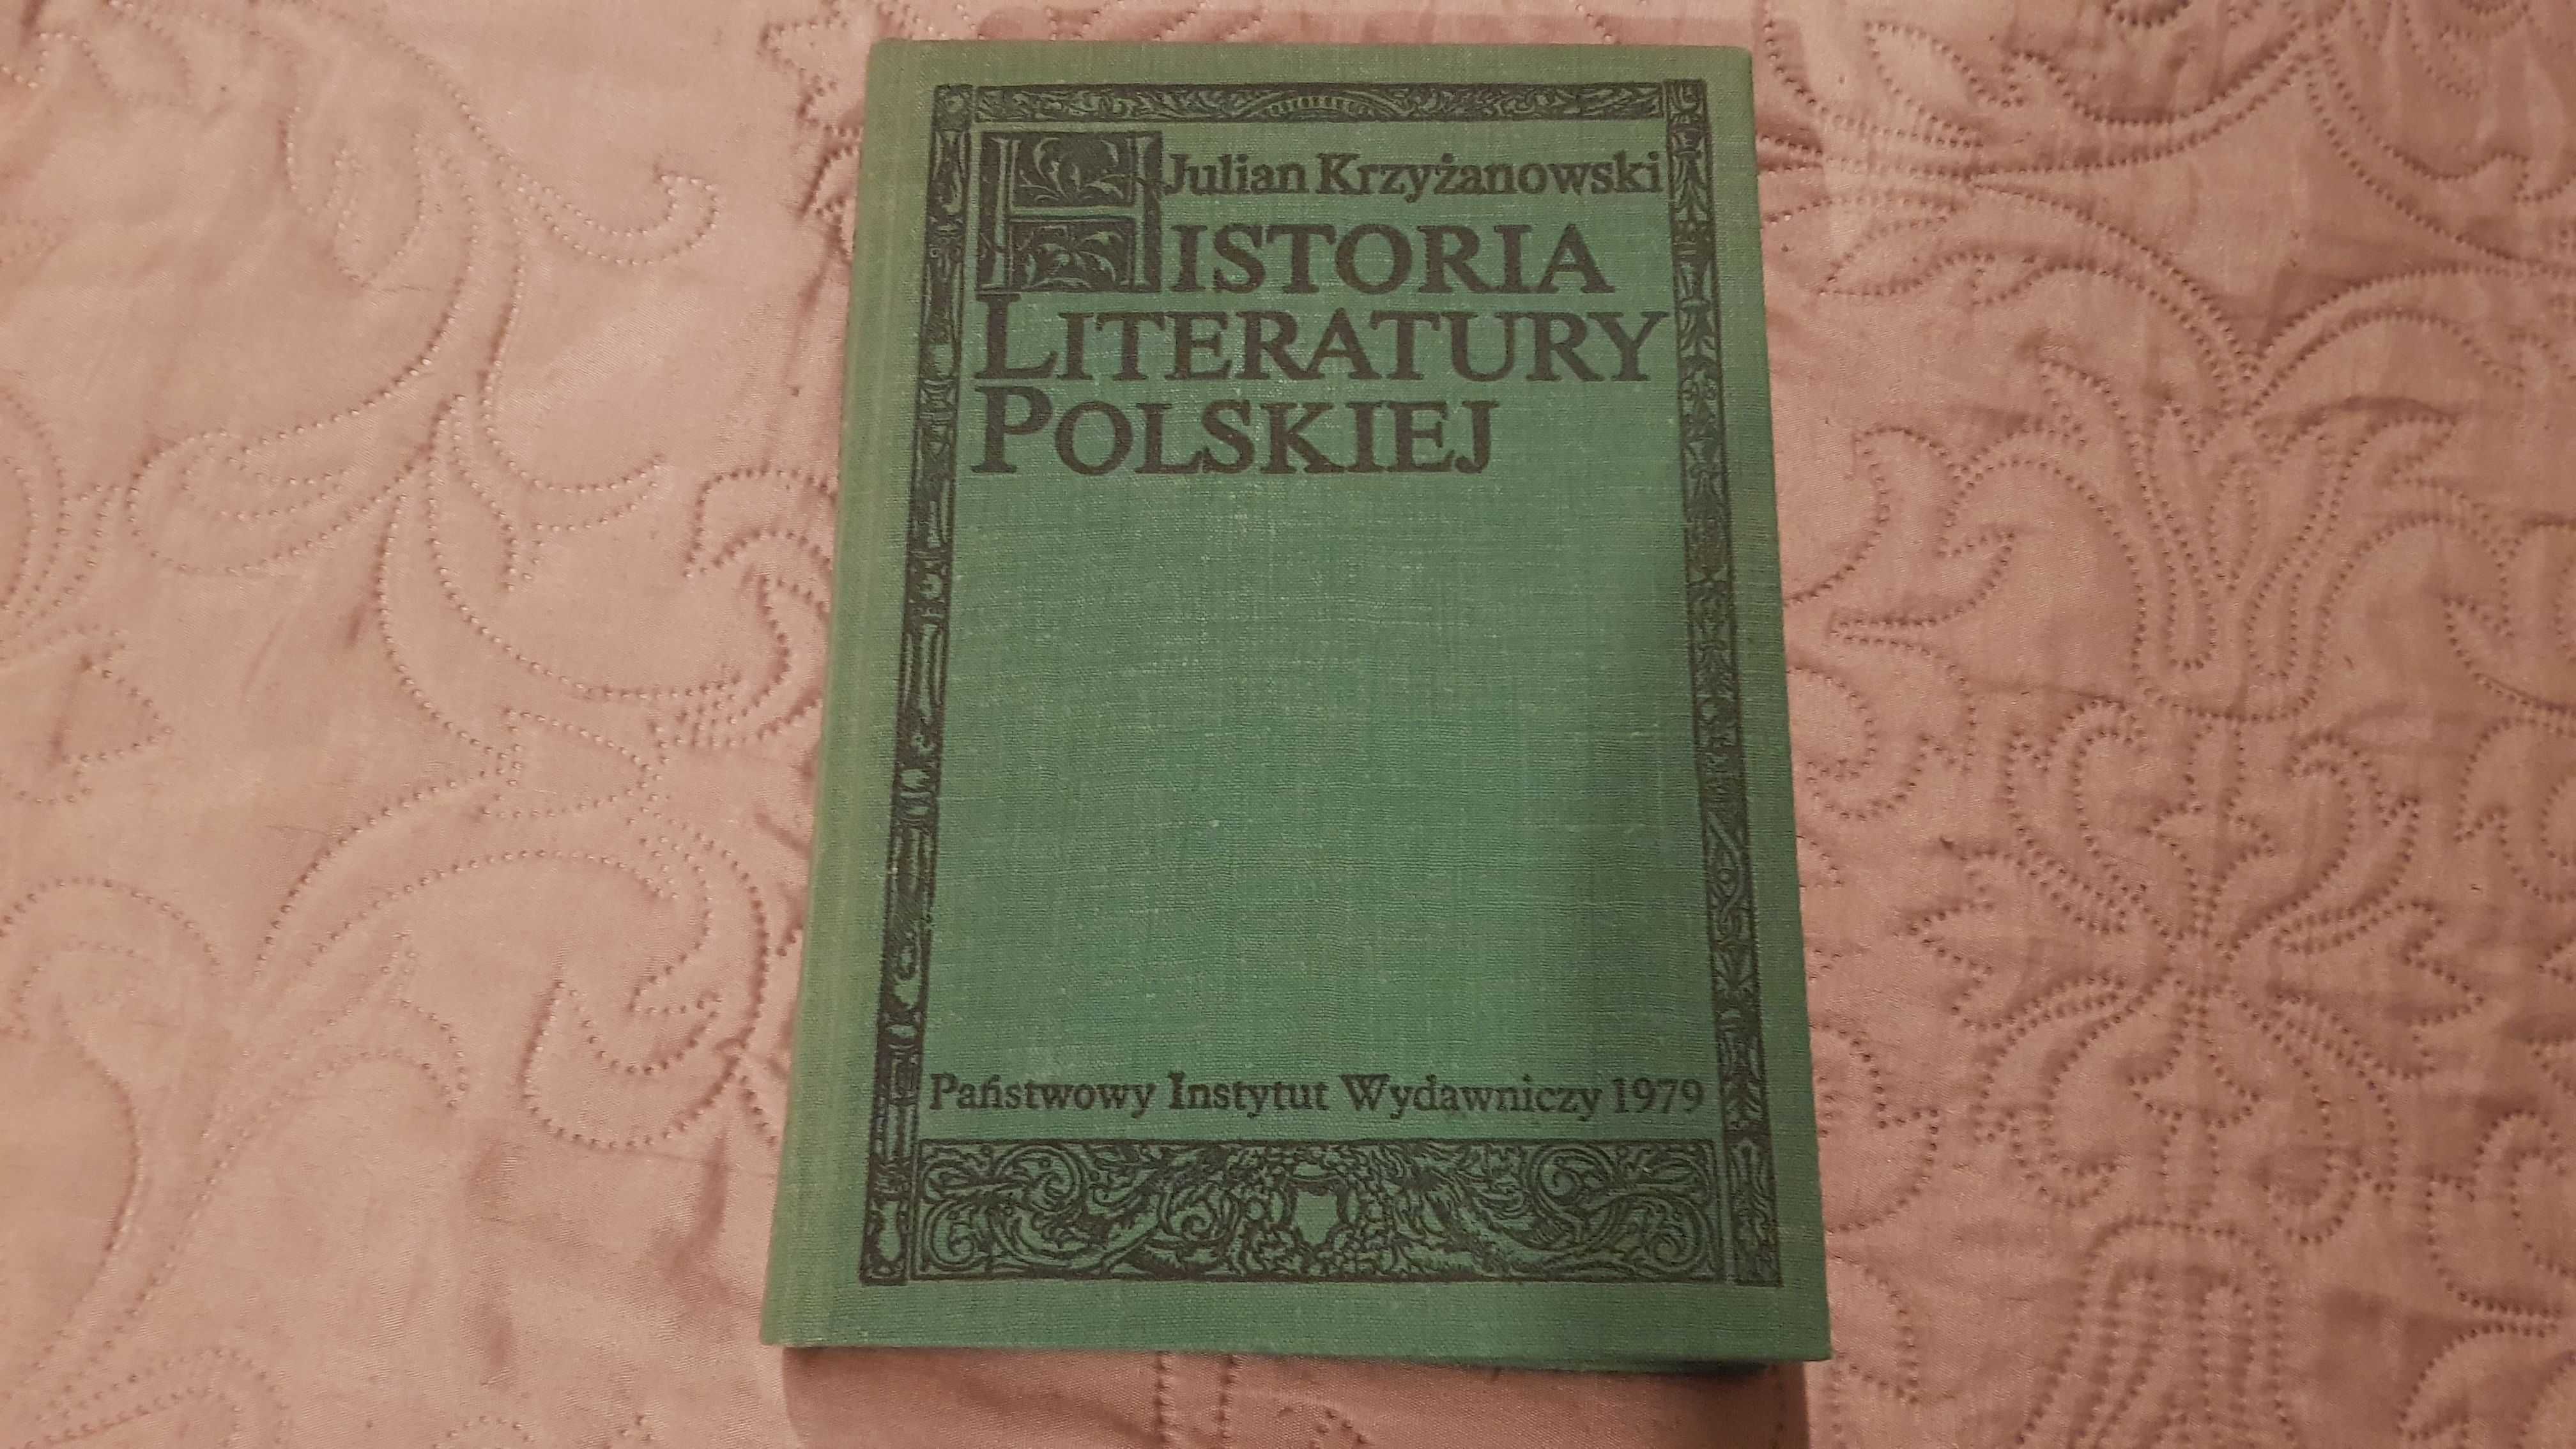 AL 3x Literatury staropolska Dzieje polskiej historia Krzyżanowski